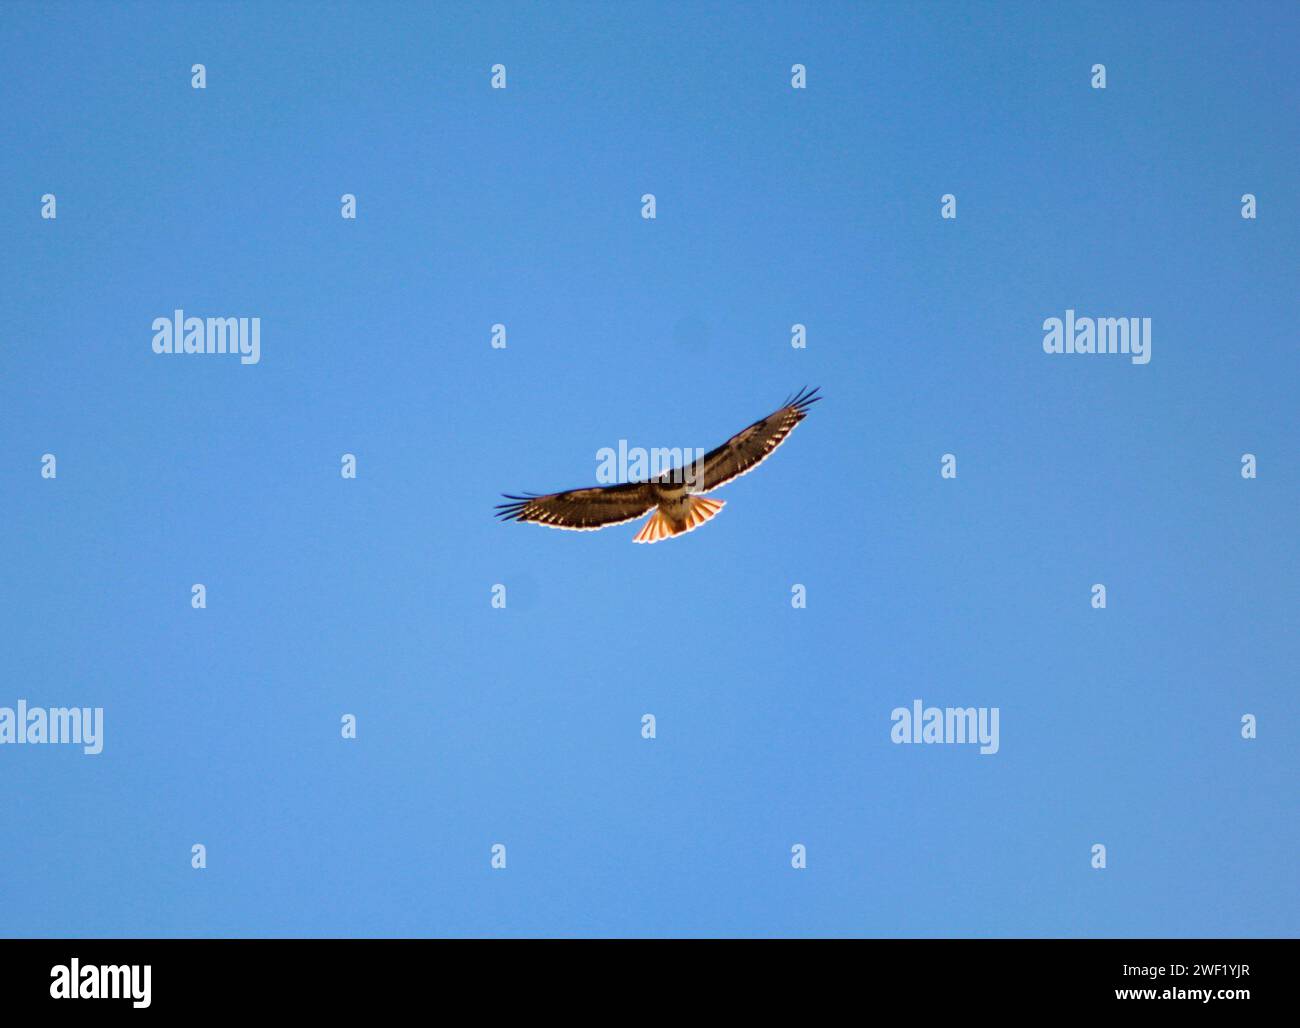 Red Tail Hawk s'élançant dans le ciel bleu, ailes déployées Banque D'Images